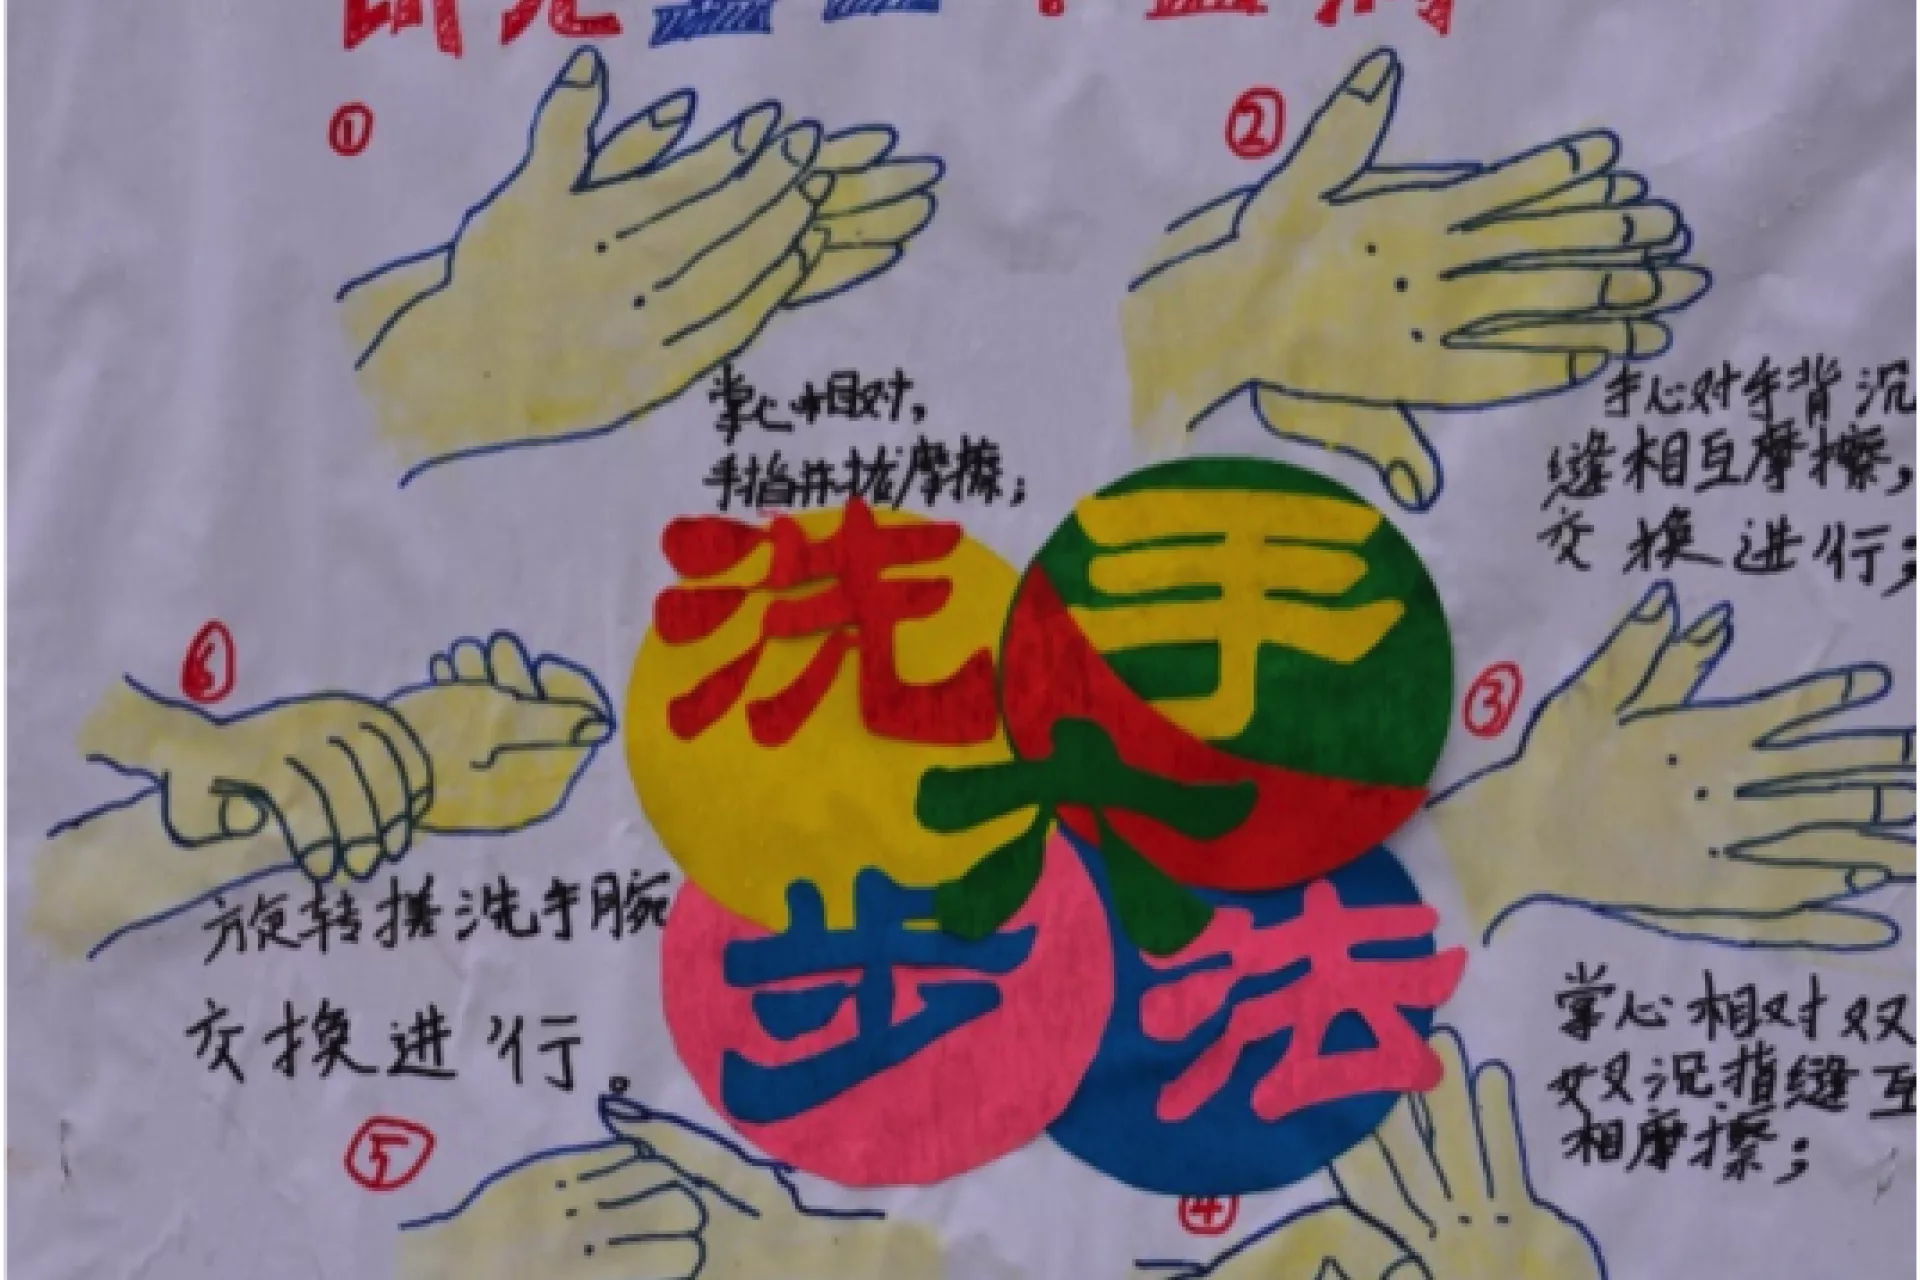 重庆忠县某小学的洗手画。